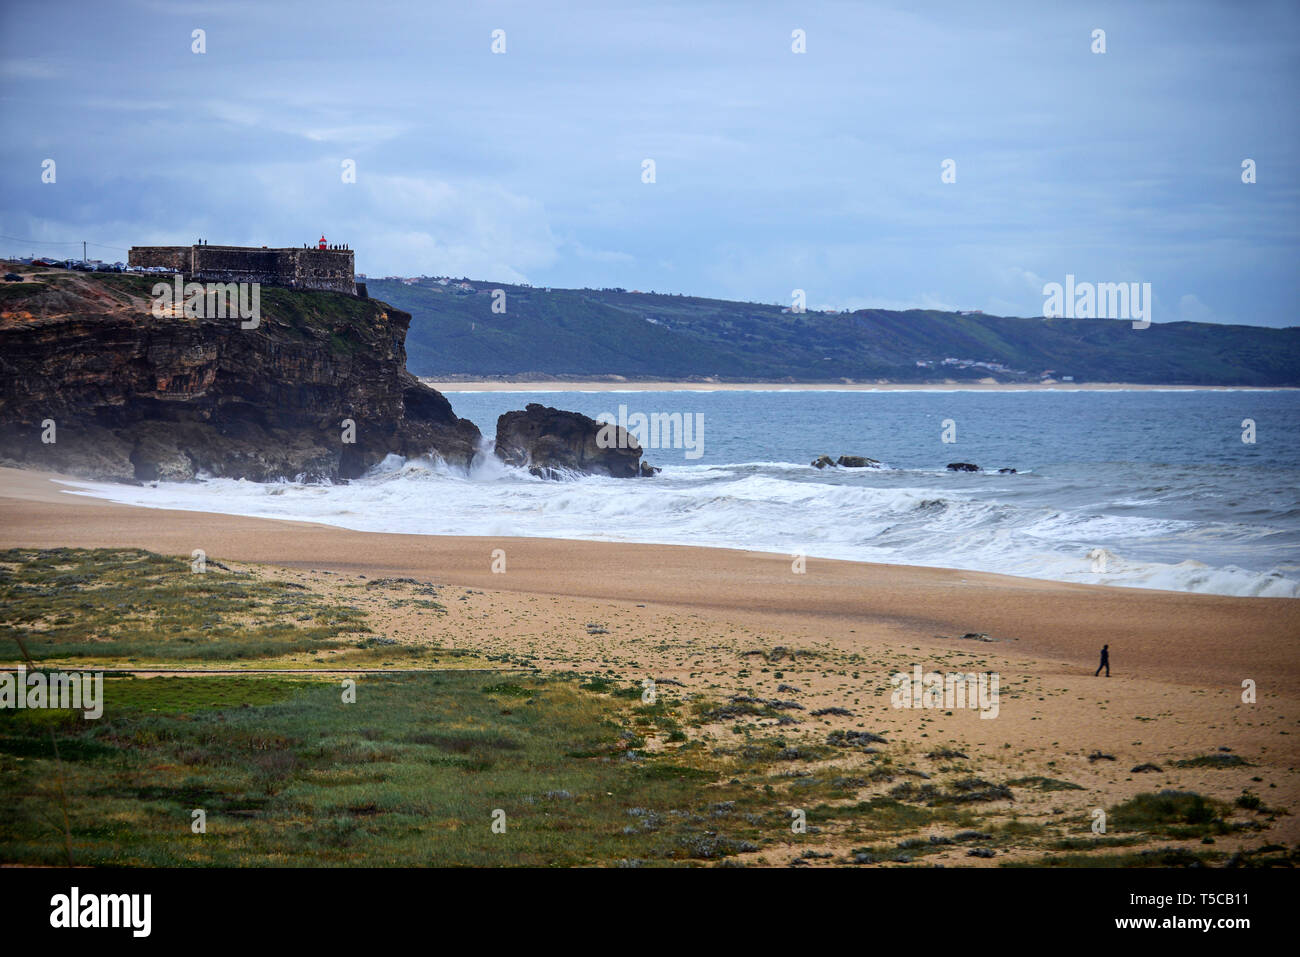 Praia do Norte (North Beach) in Nazare, Portugal Stock Photo - Alamy